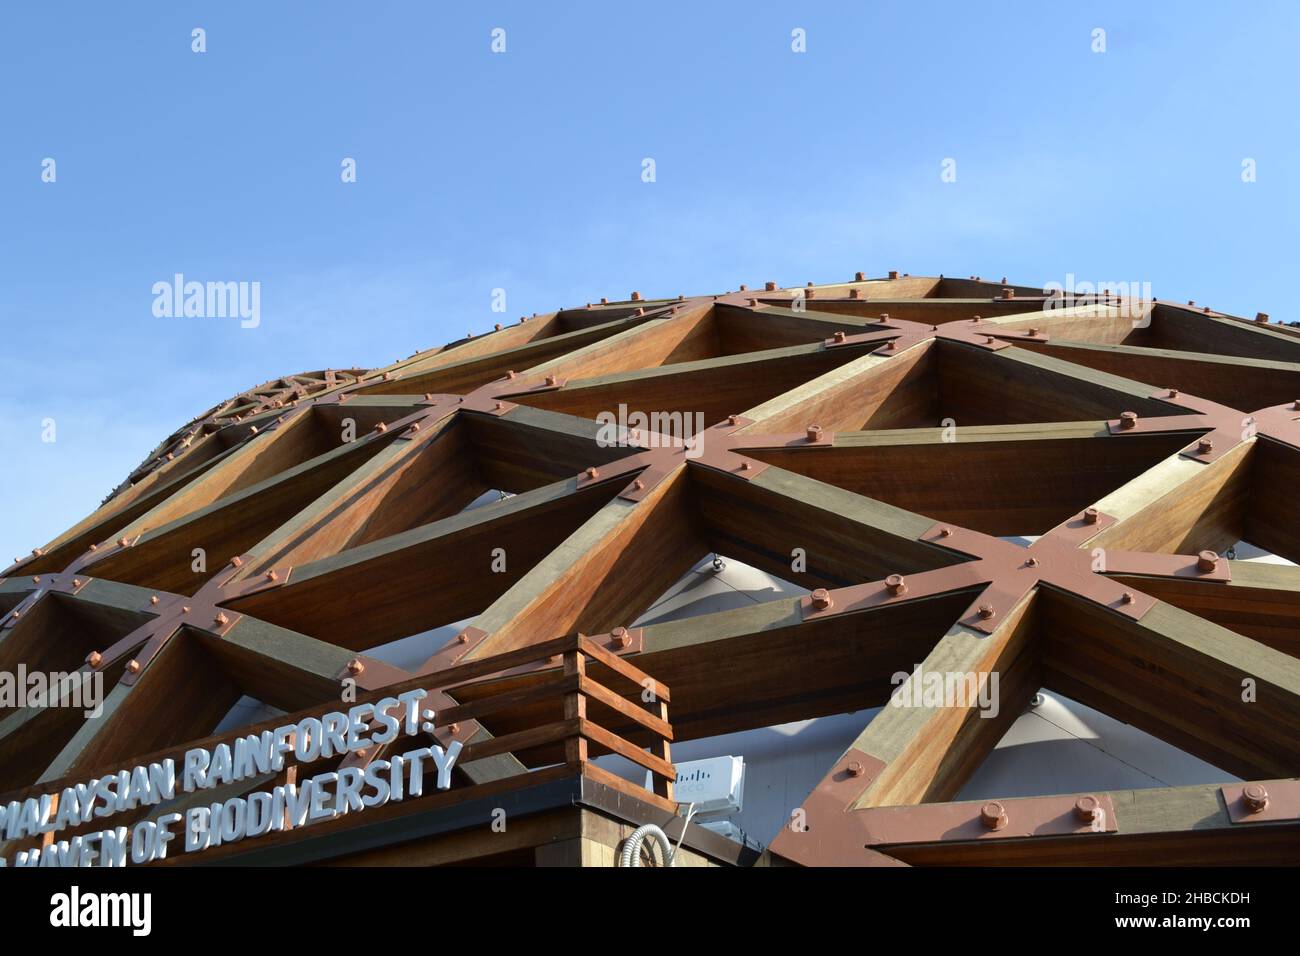 Milan, Italie - 20 octobre 2015 : vue rapprochée de la structure ovale unie du toit et des murs en poutres en bois du pavillon malaisien. Banque D'Images